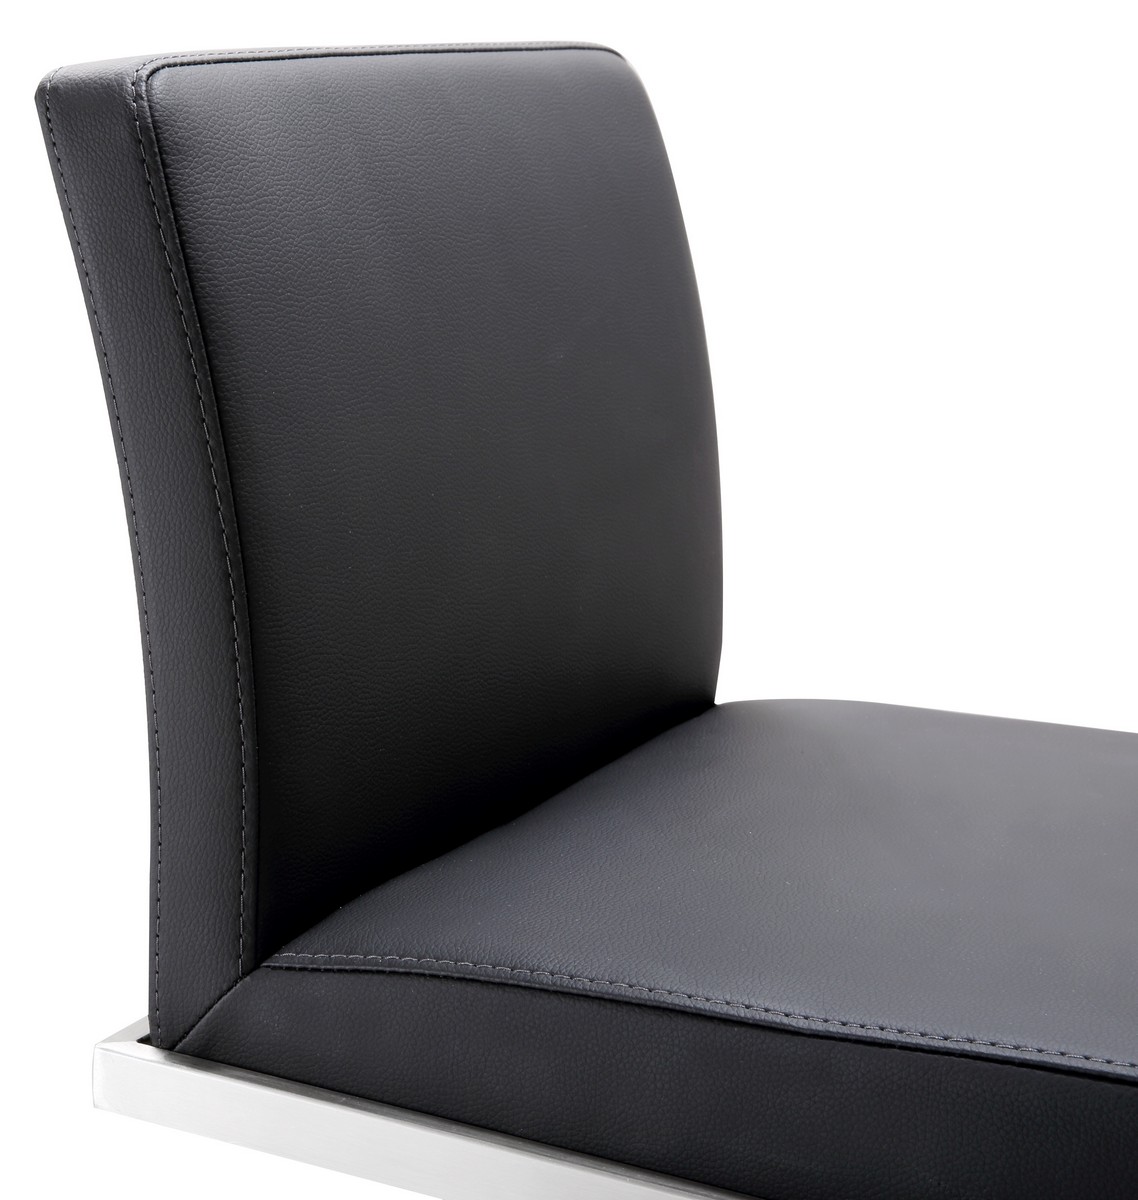 TOV Furniture Amalfi Black Stainless Steel Adjustable Barstool